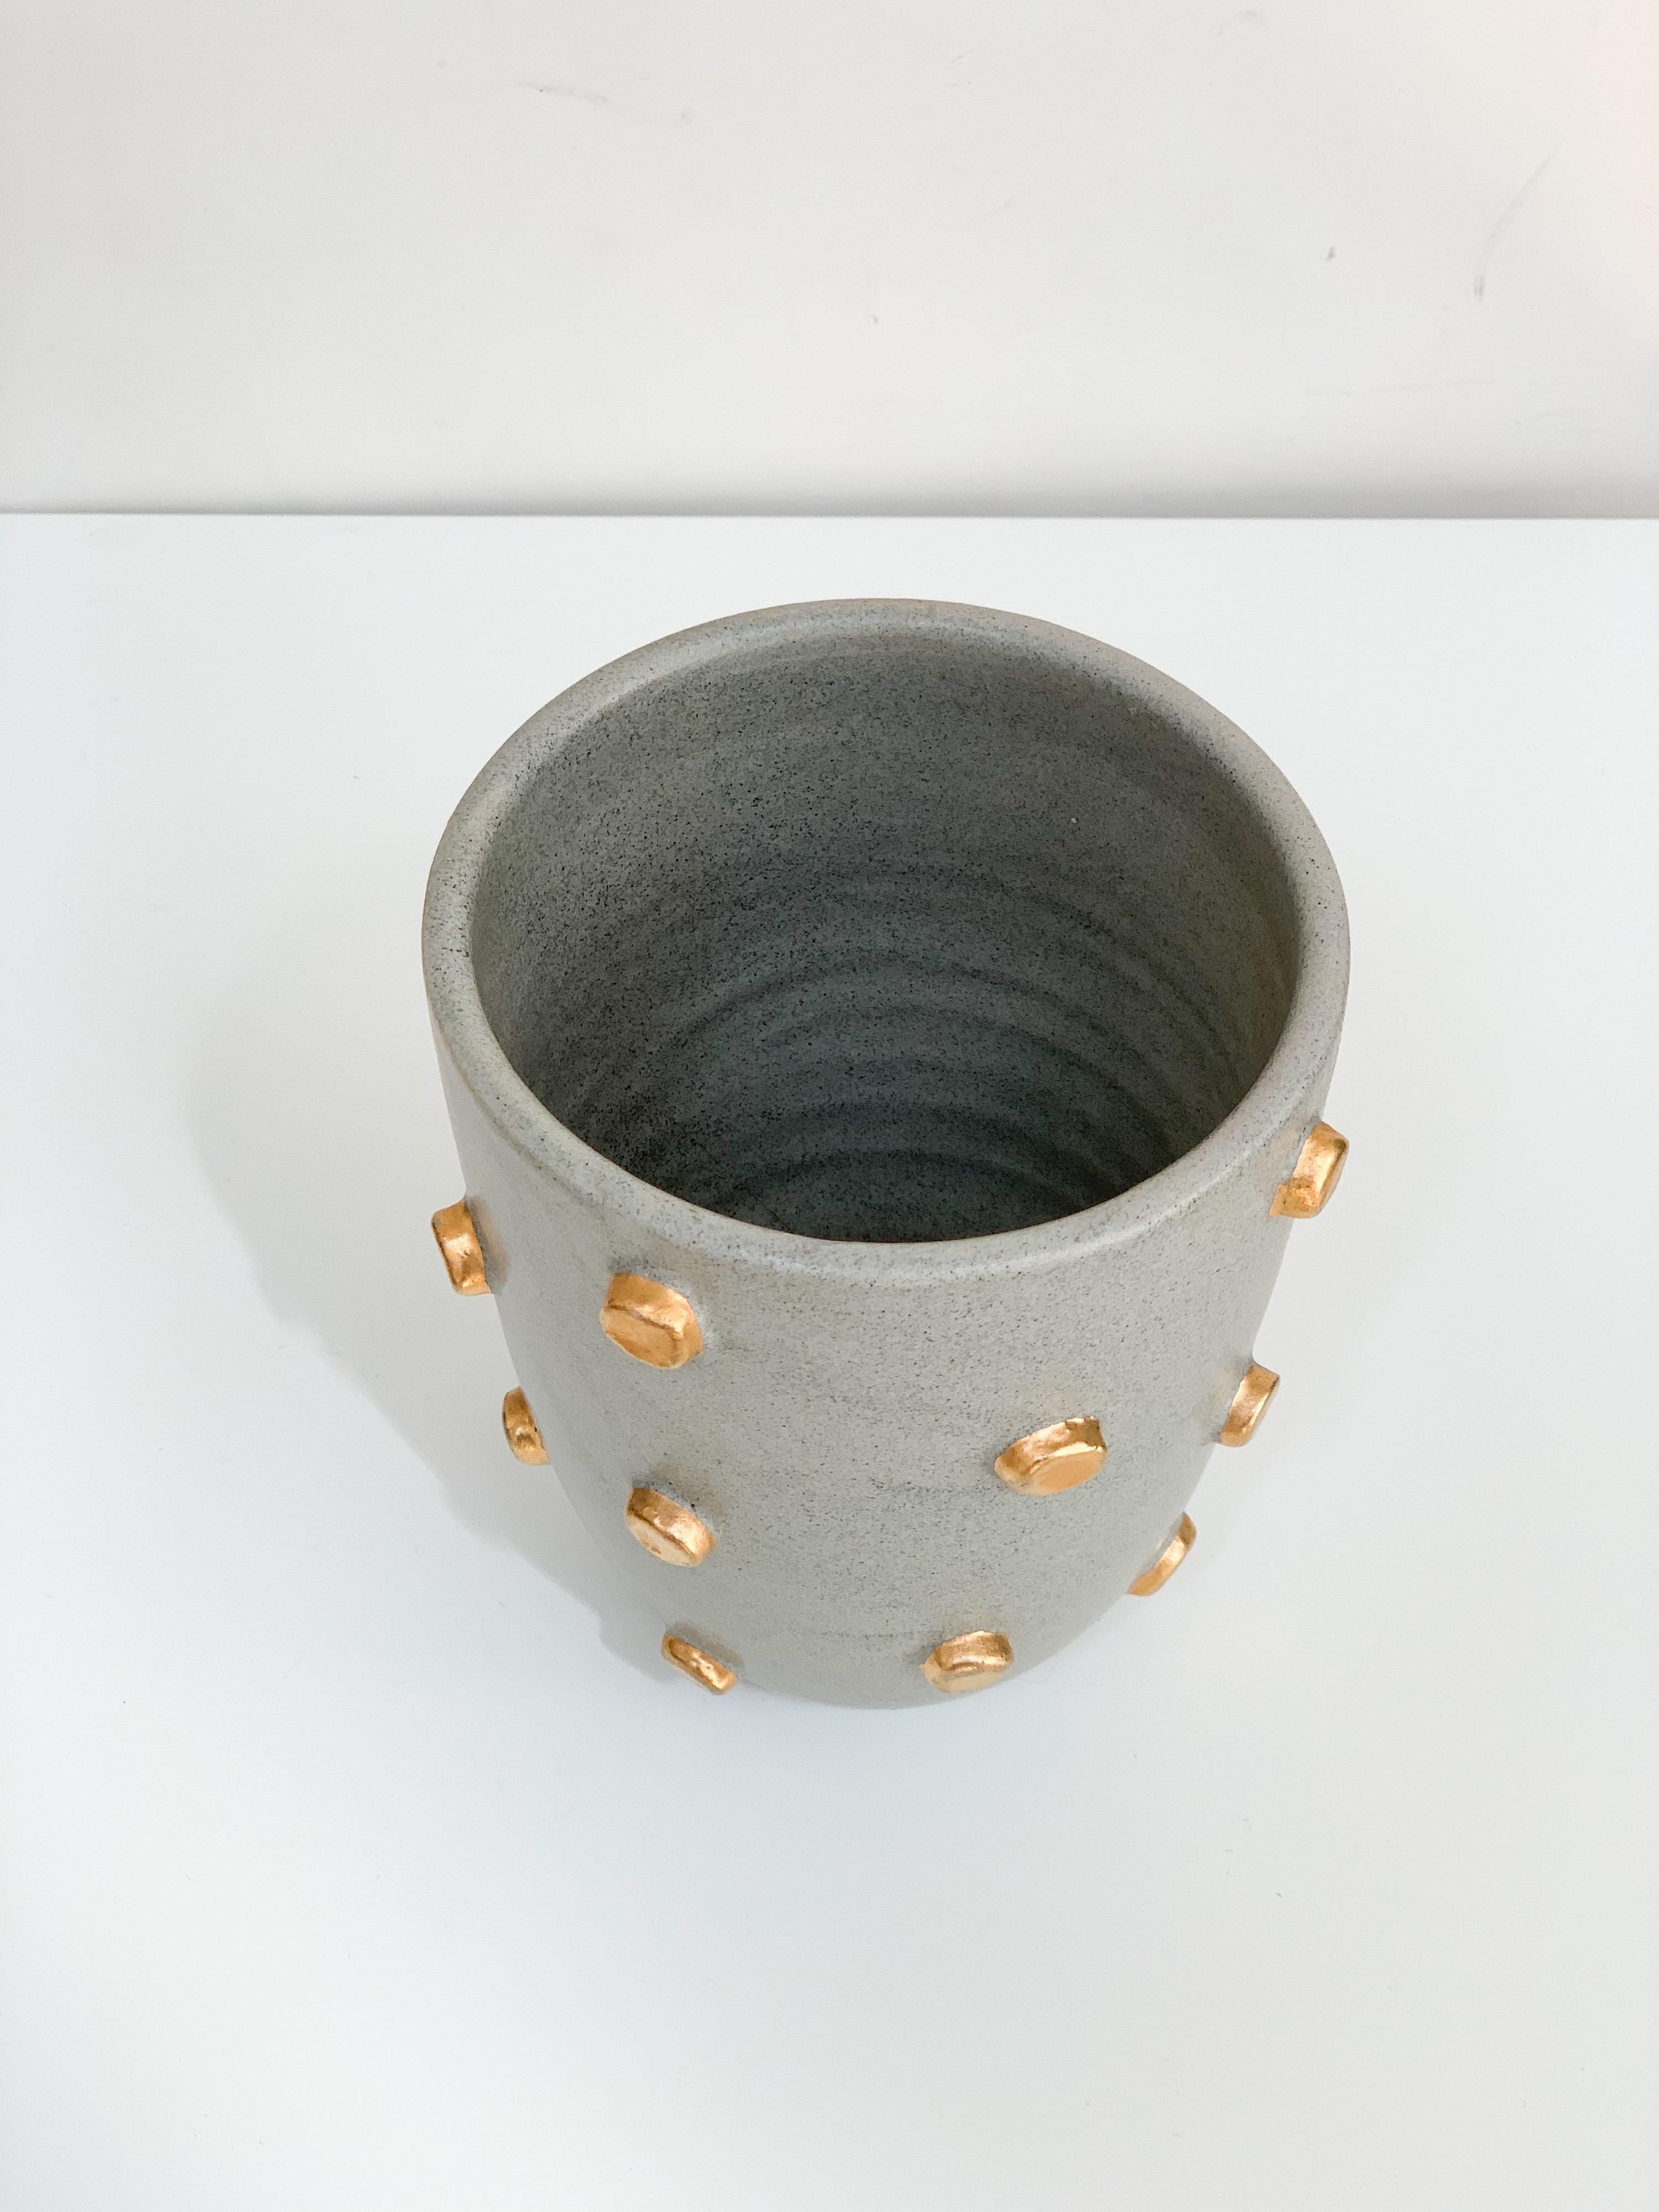 Bitossi Vase, Ceramic, Gray and Gold Hobnails, Signed 3